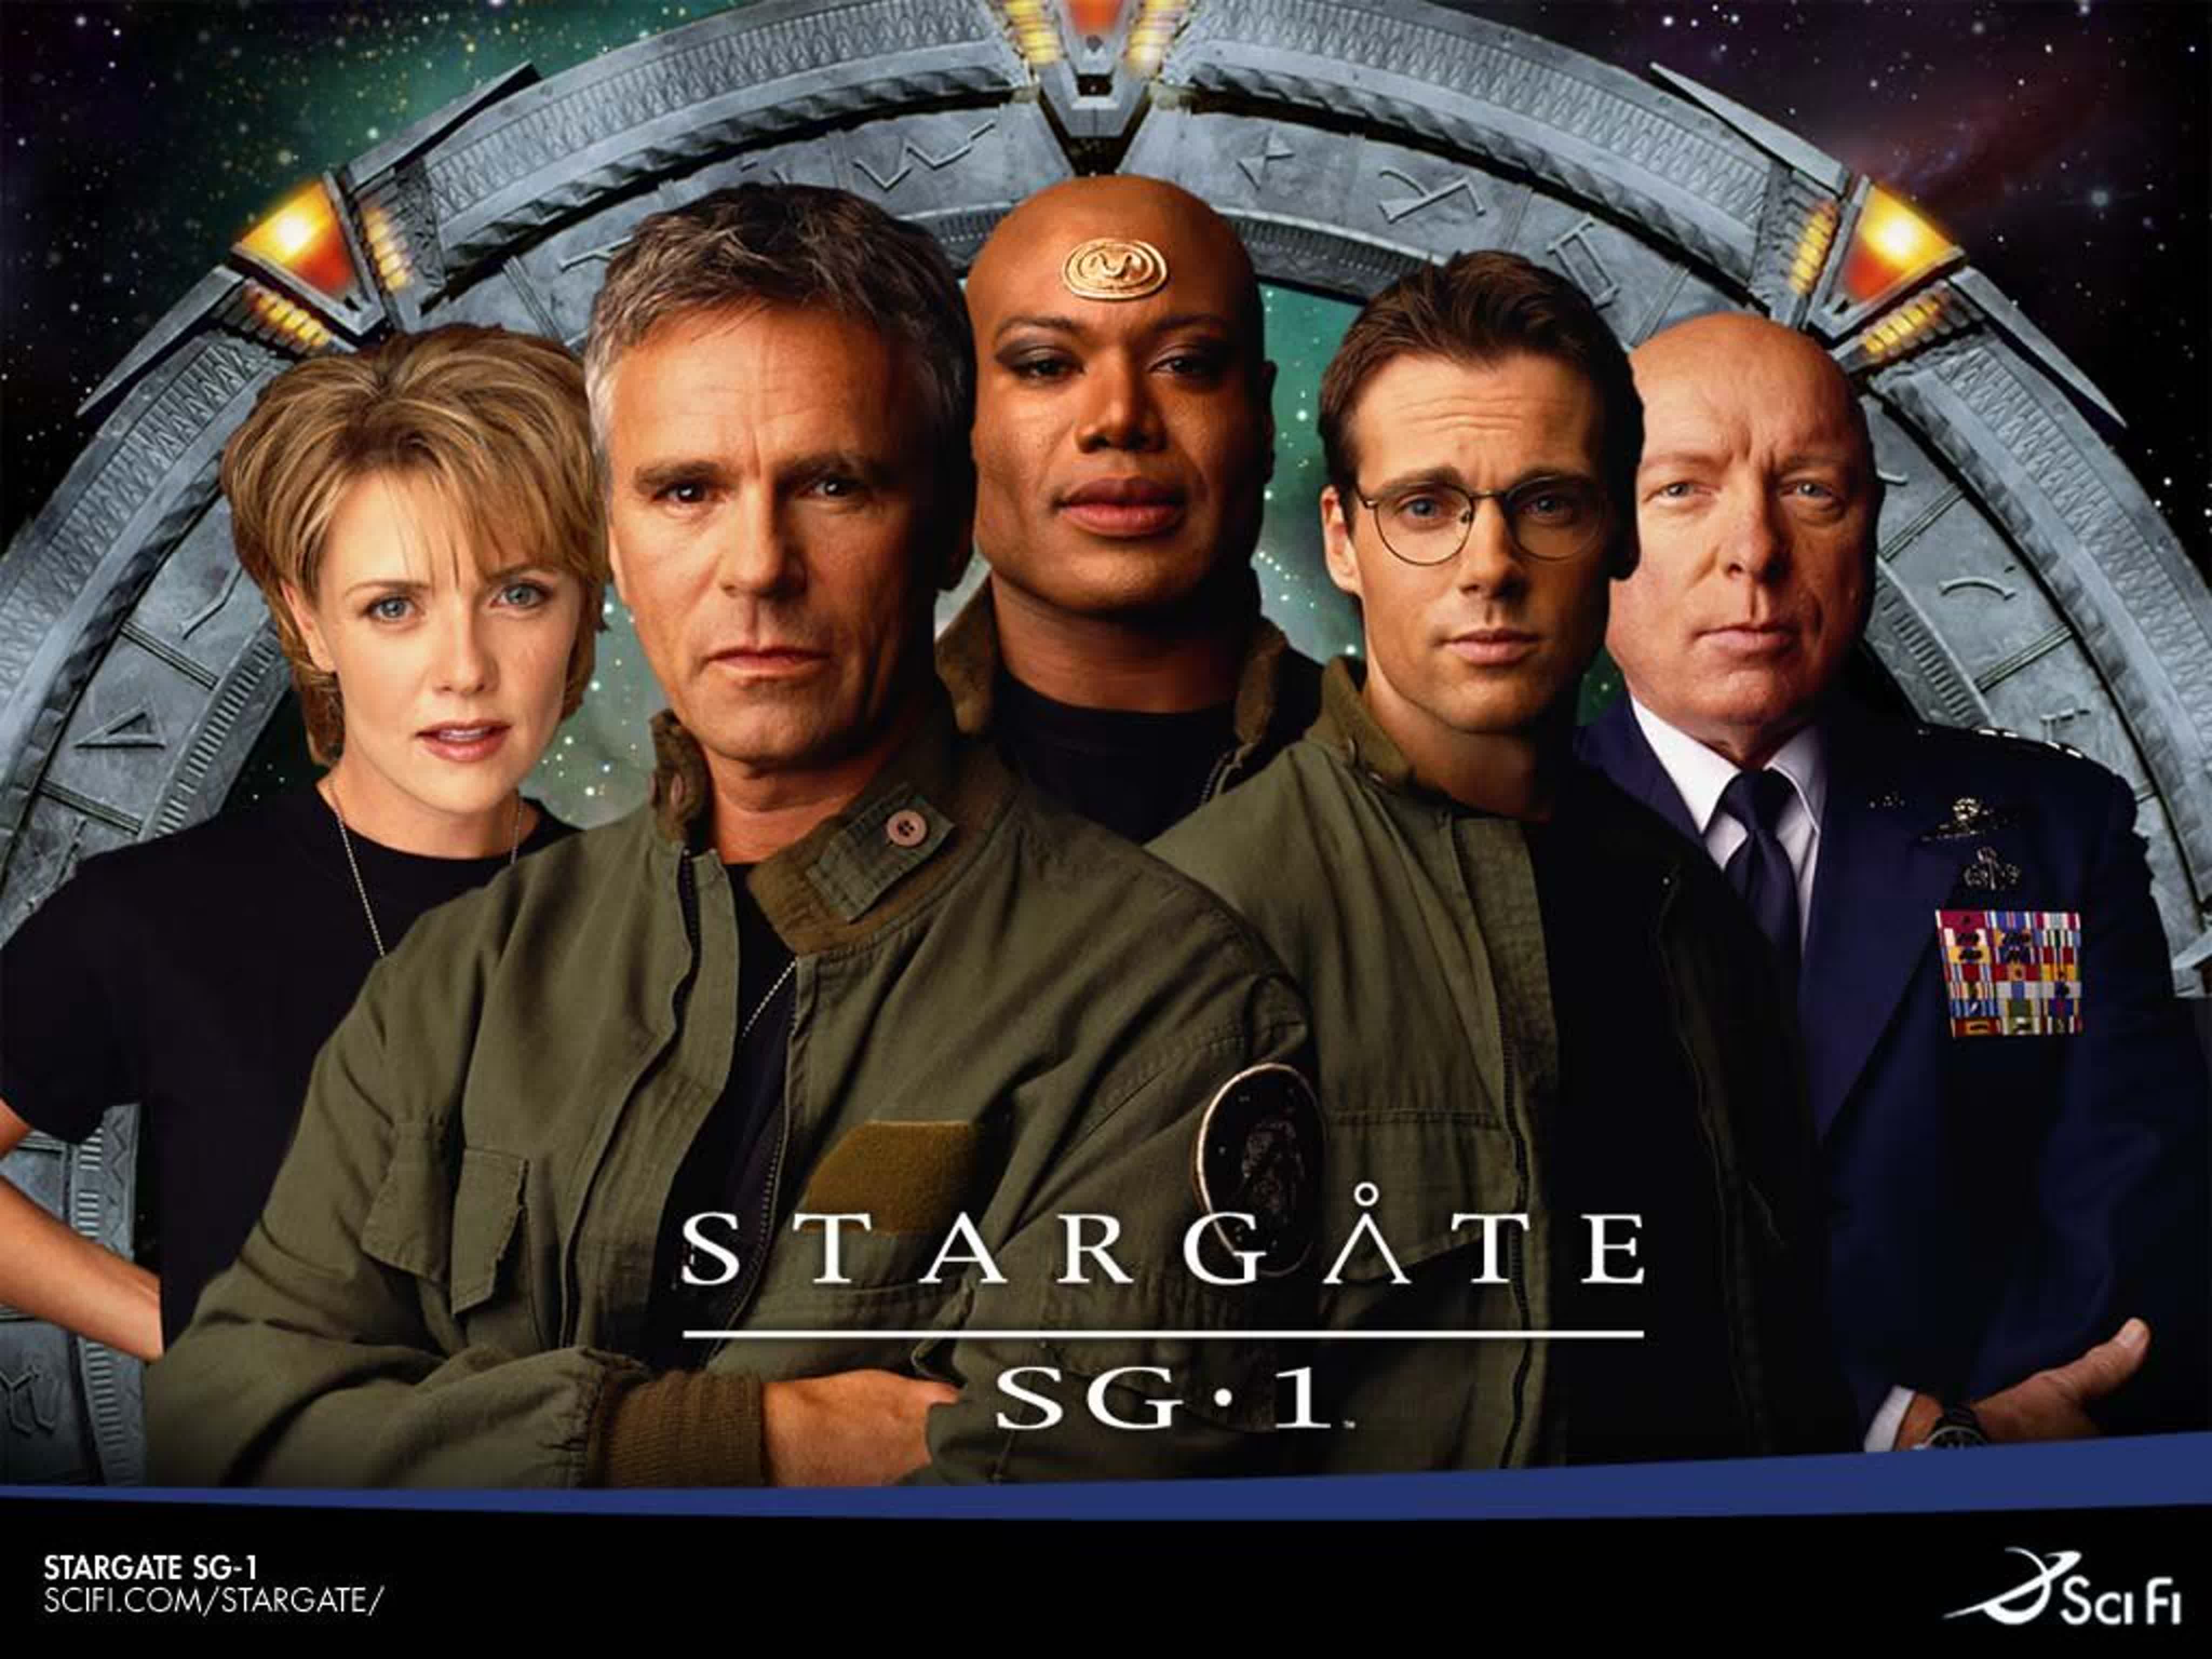 Сериал "Звездные врата: SG-1" Первый сезон (1997—1998)